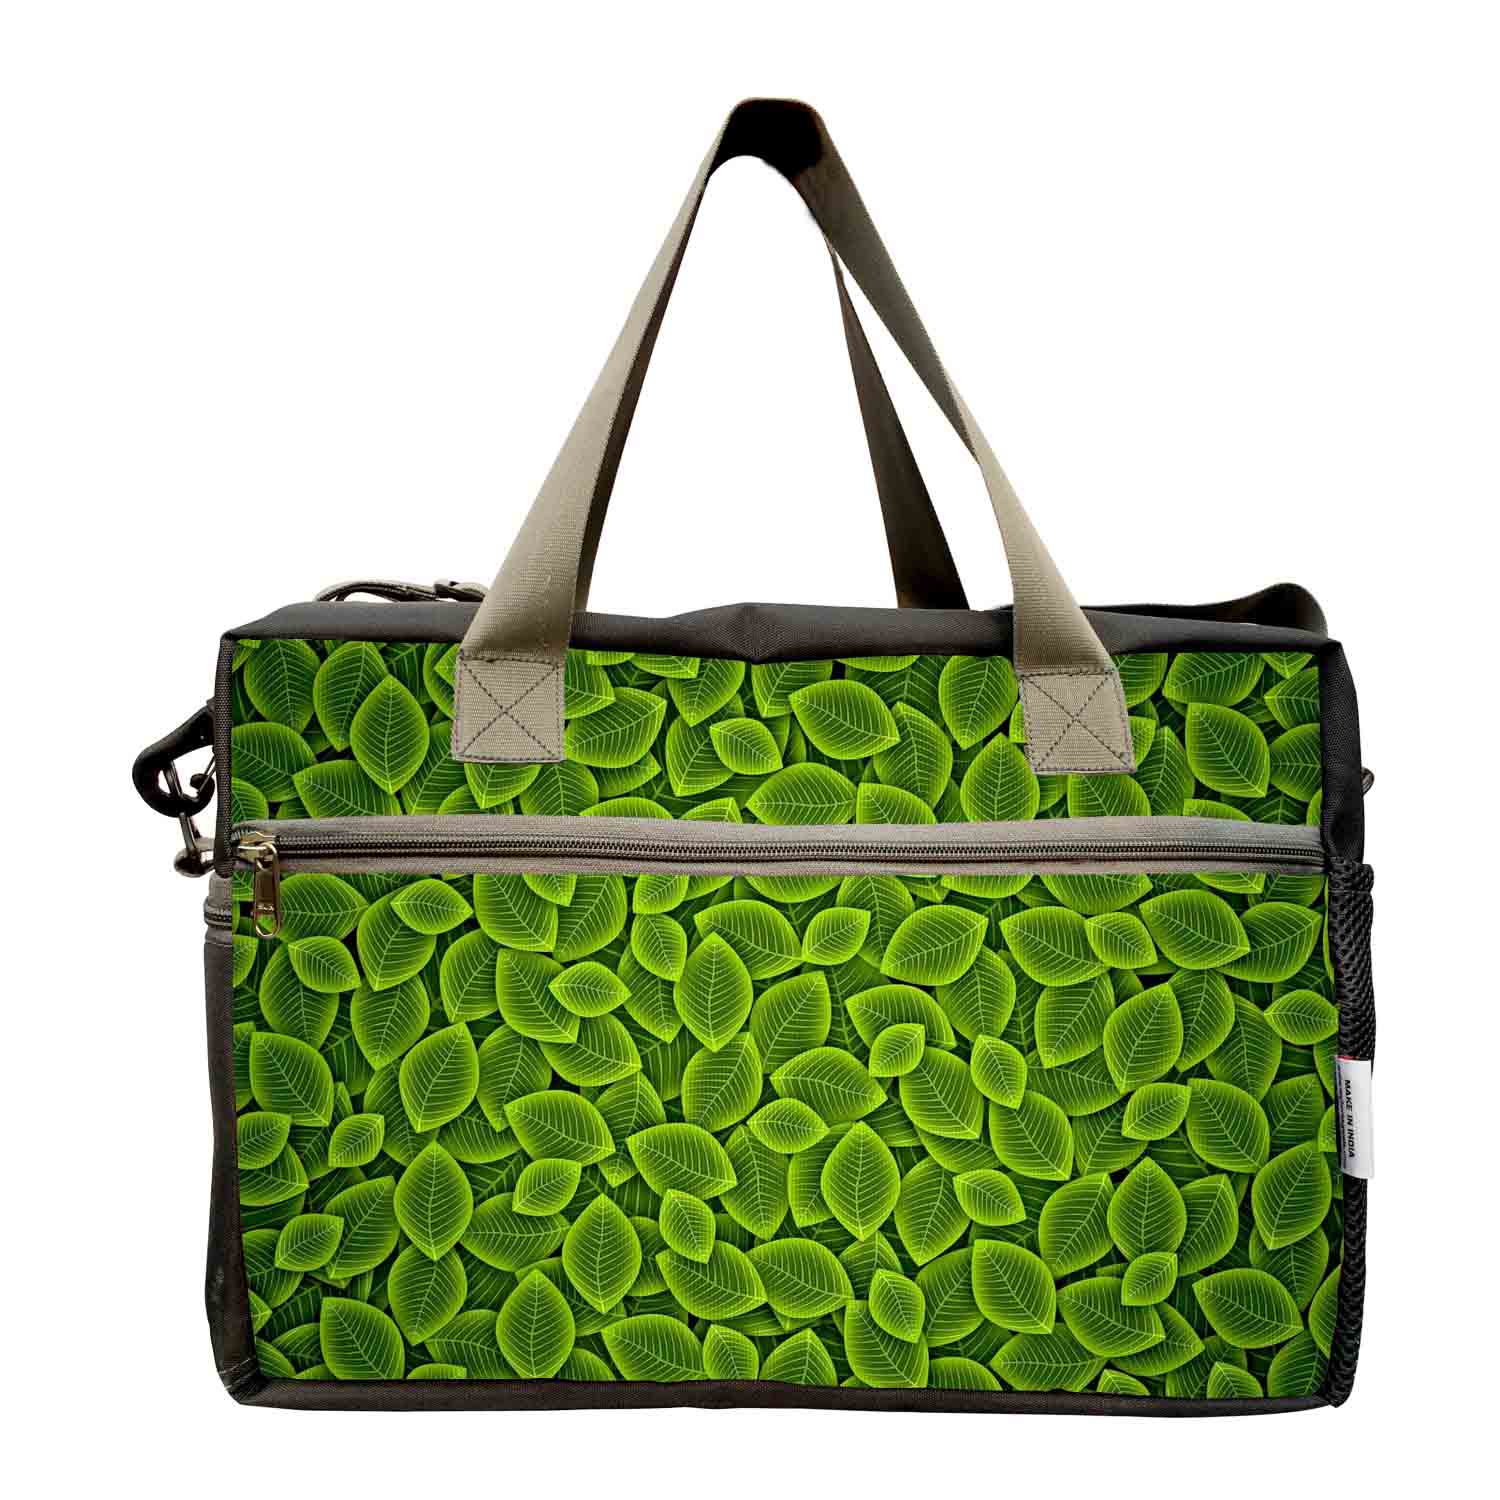 My Fav Leavs Print Cabin Size Duffle Travel bag for Men Women